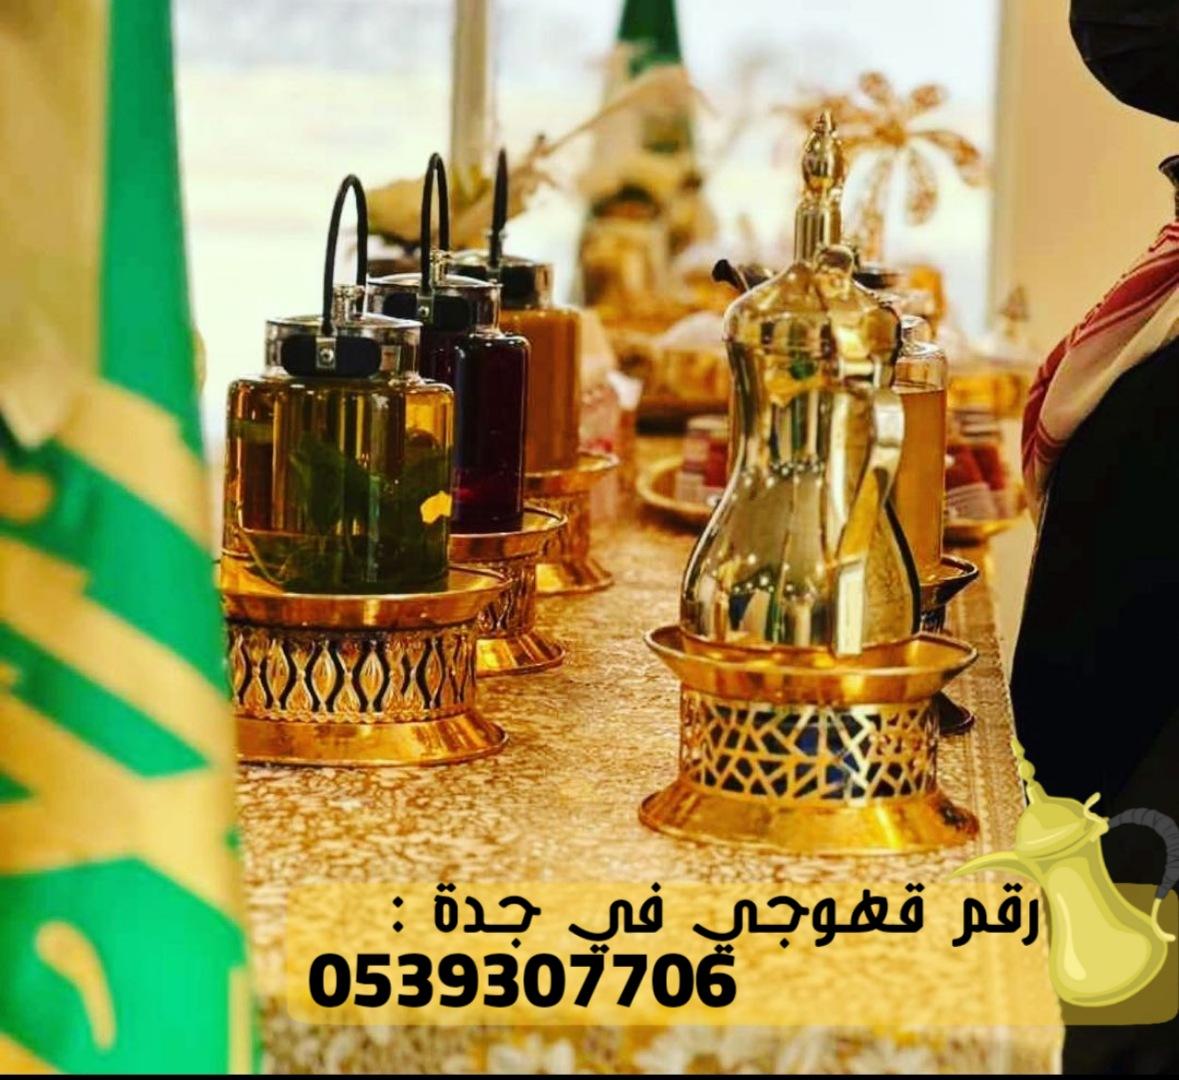 ضيافة قهوجيين رجال ونساء في جدة, 0539307706 309924180